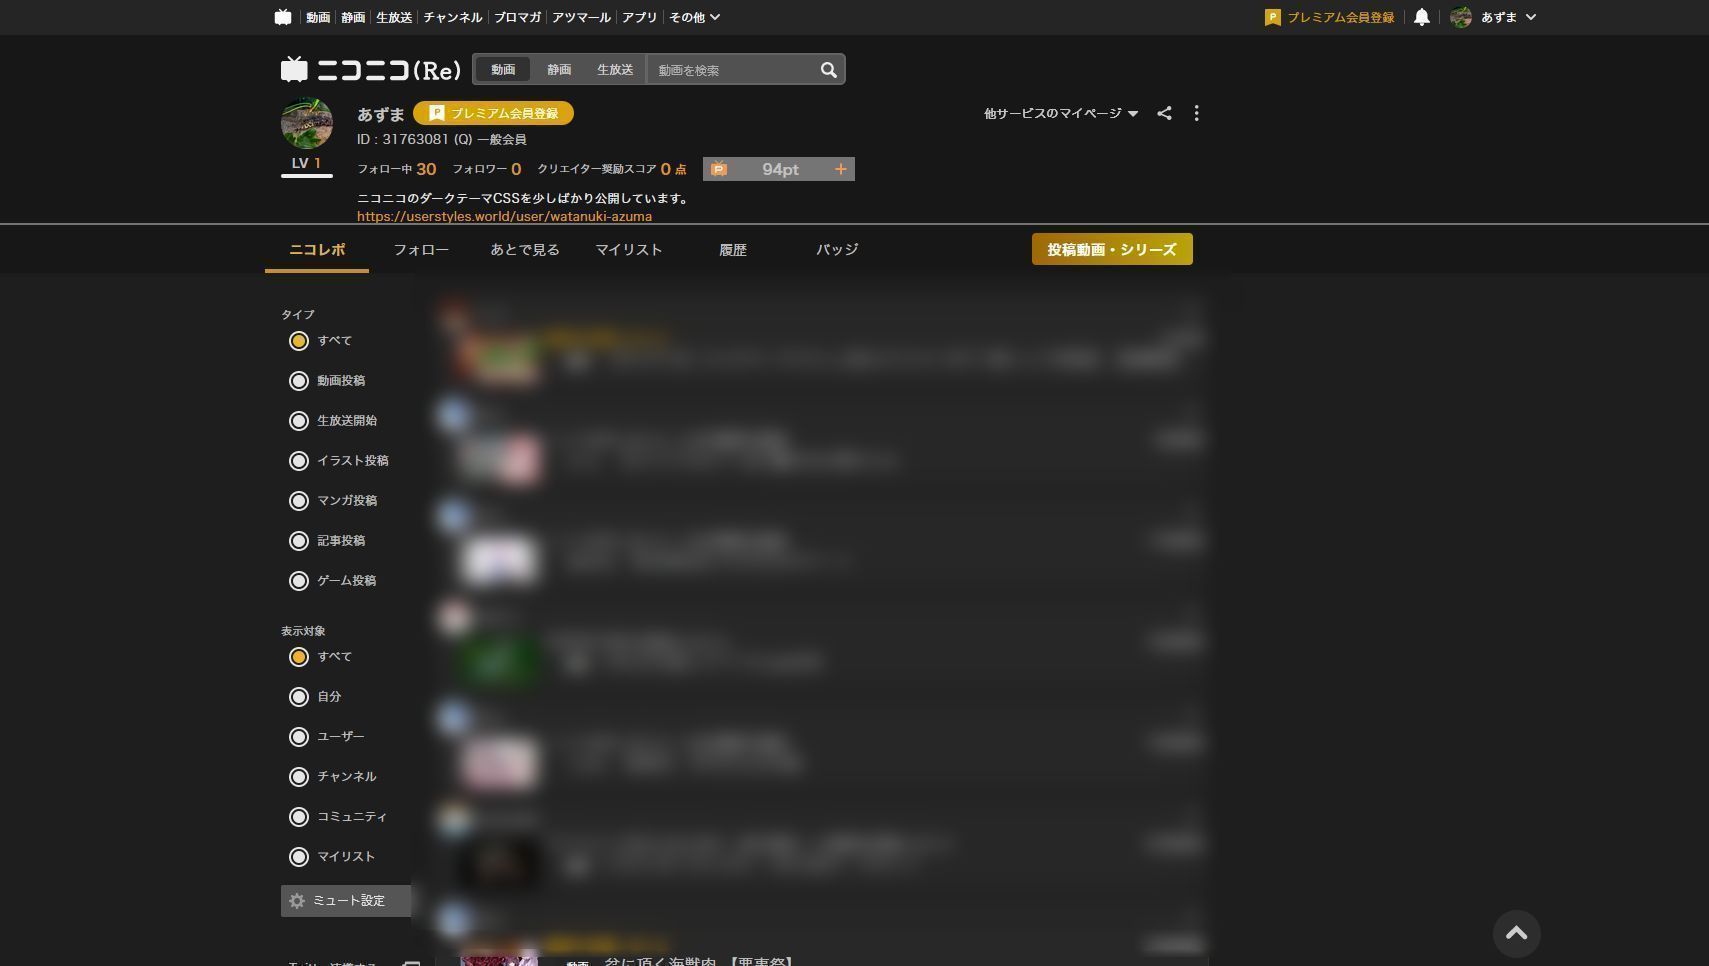 Screenshot of ニコニコ(Re)マイページ ダークテーマ